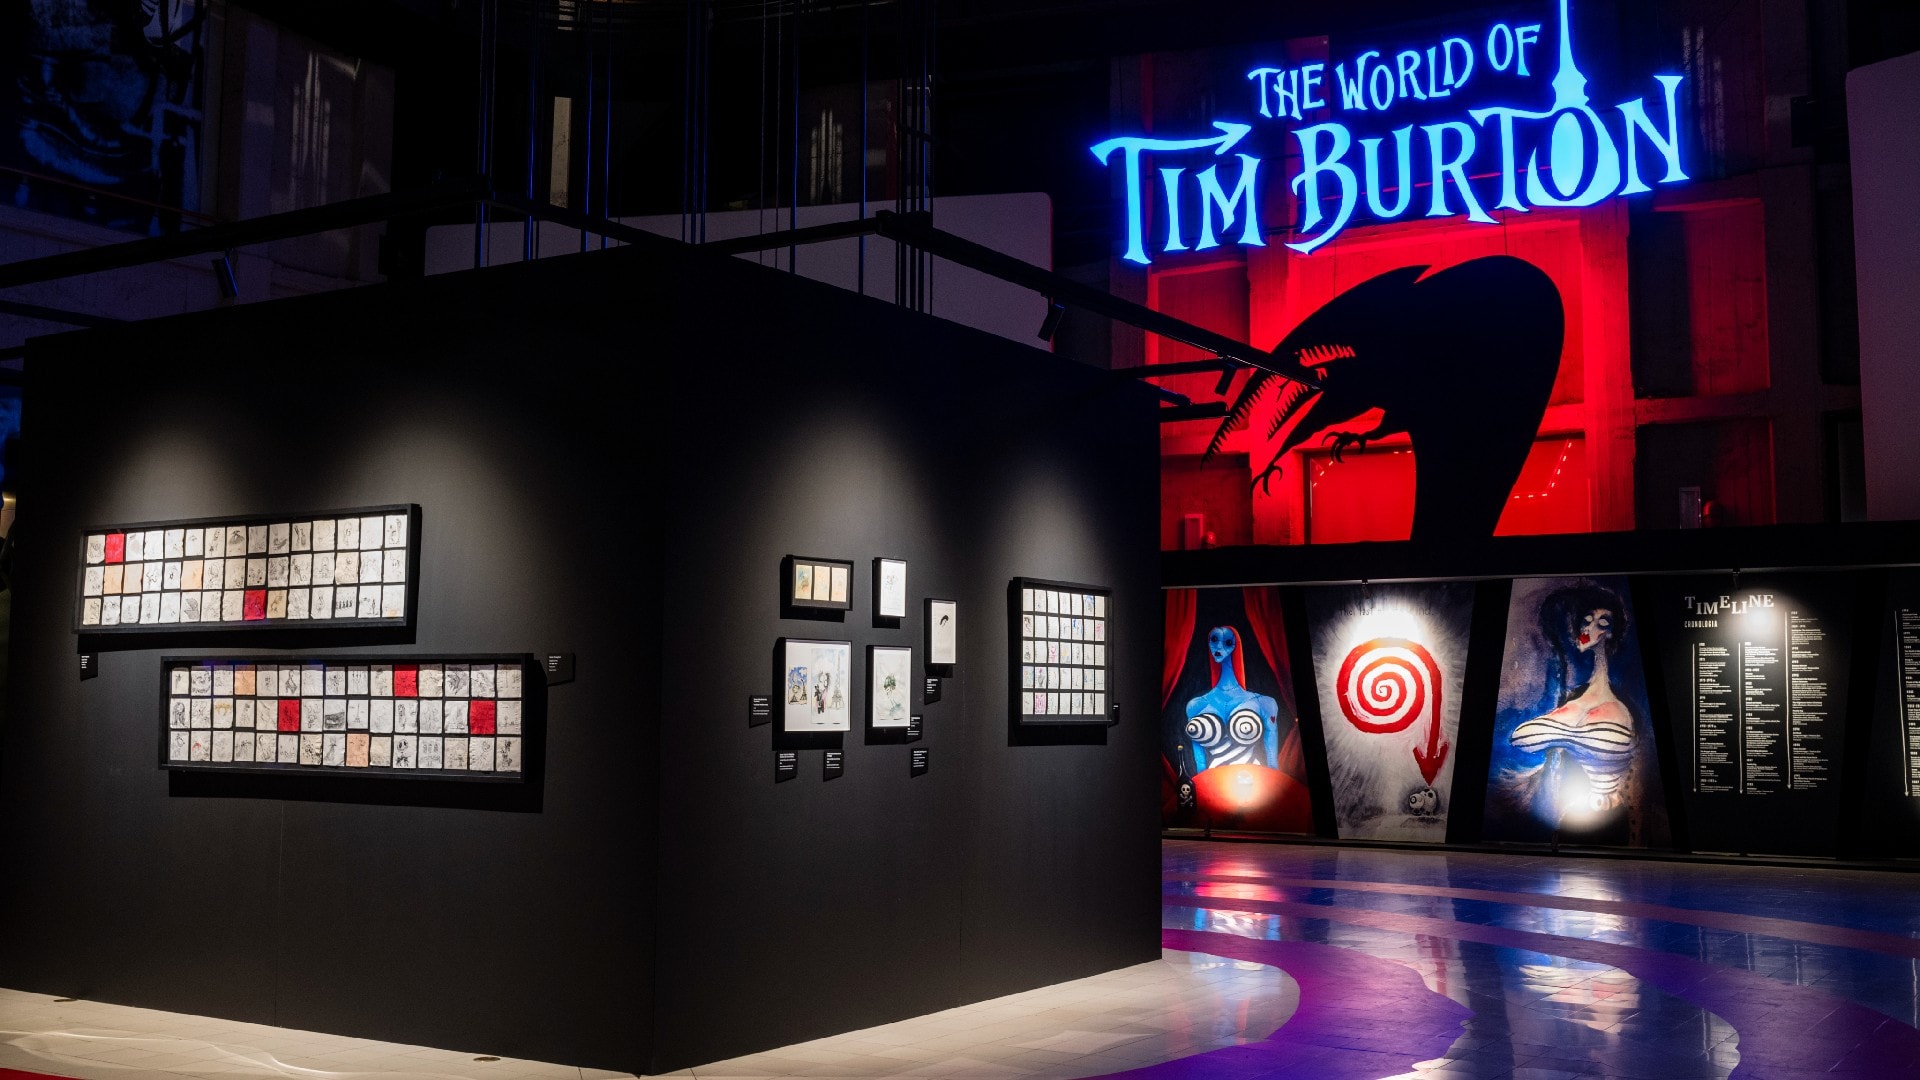 Nel fantastico mondo di Tim Burton